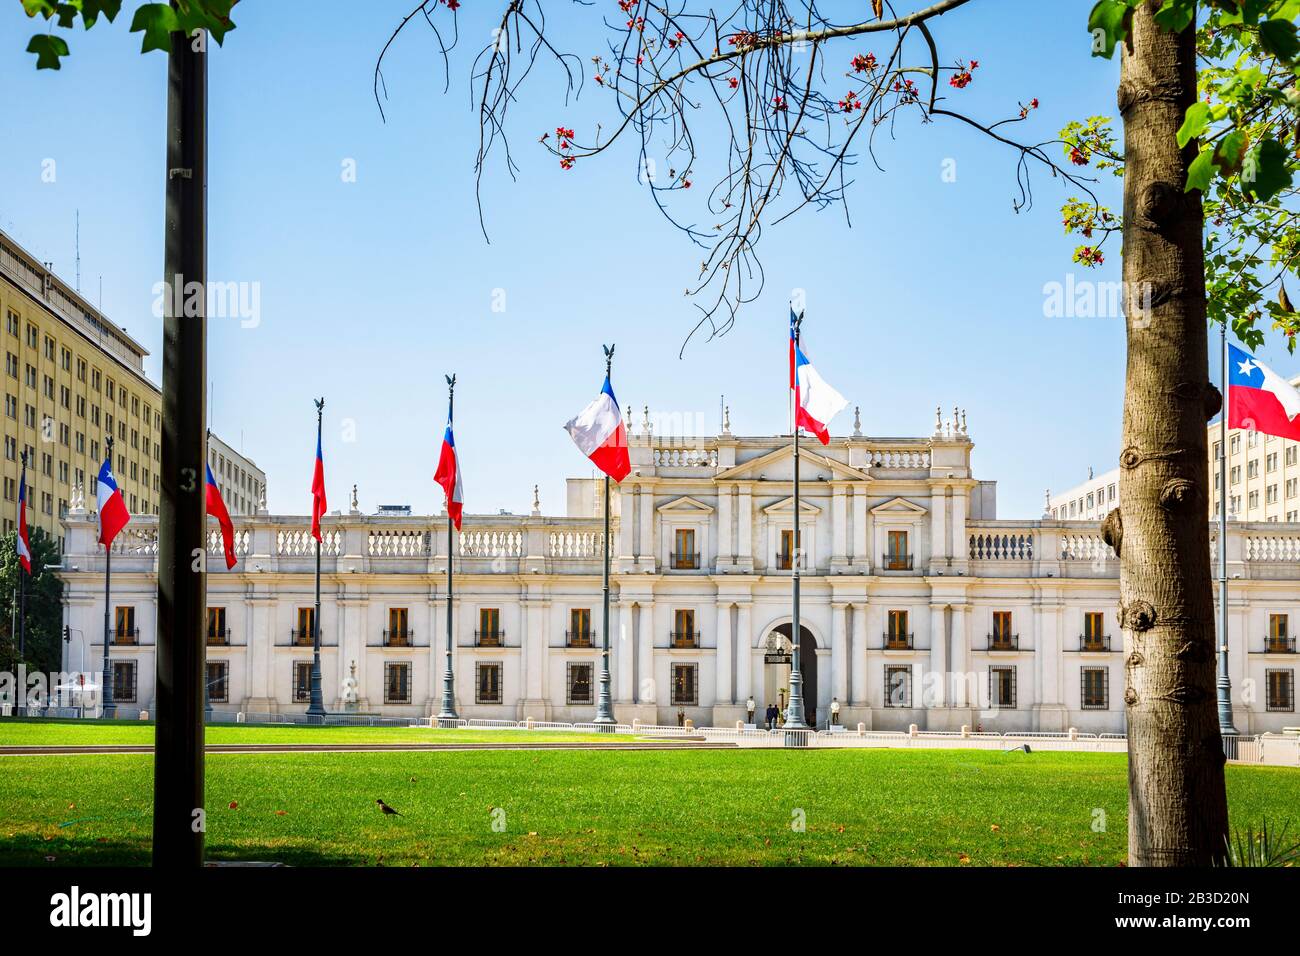 Façade du Palacio néoclassique de la Moneda ou du Palais de la Moneda, siège du Président de la République du Chili, Santiago, capitale du Chili Banque D'Images